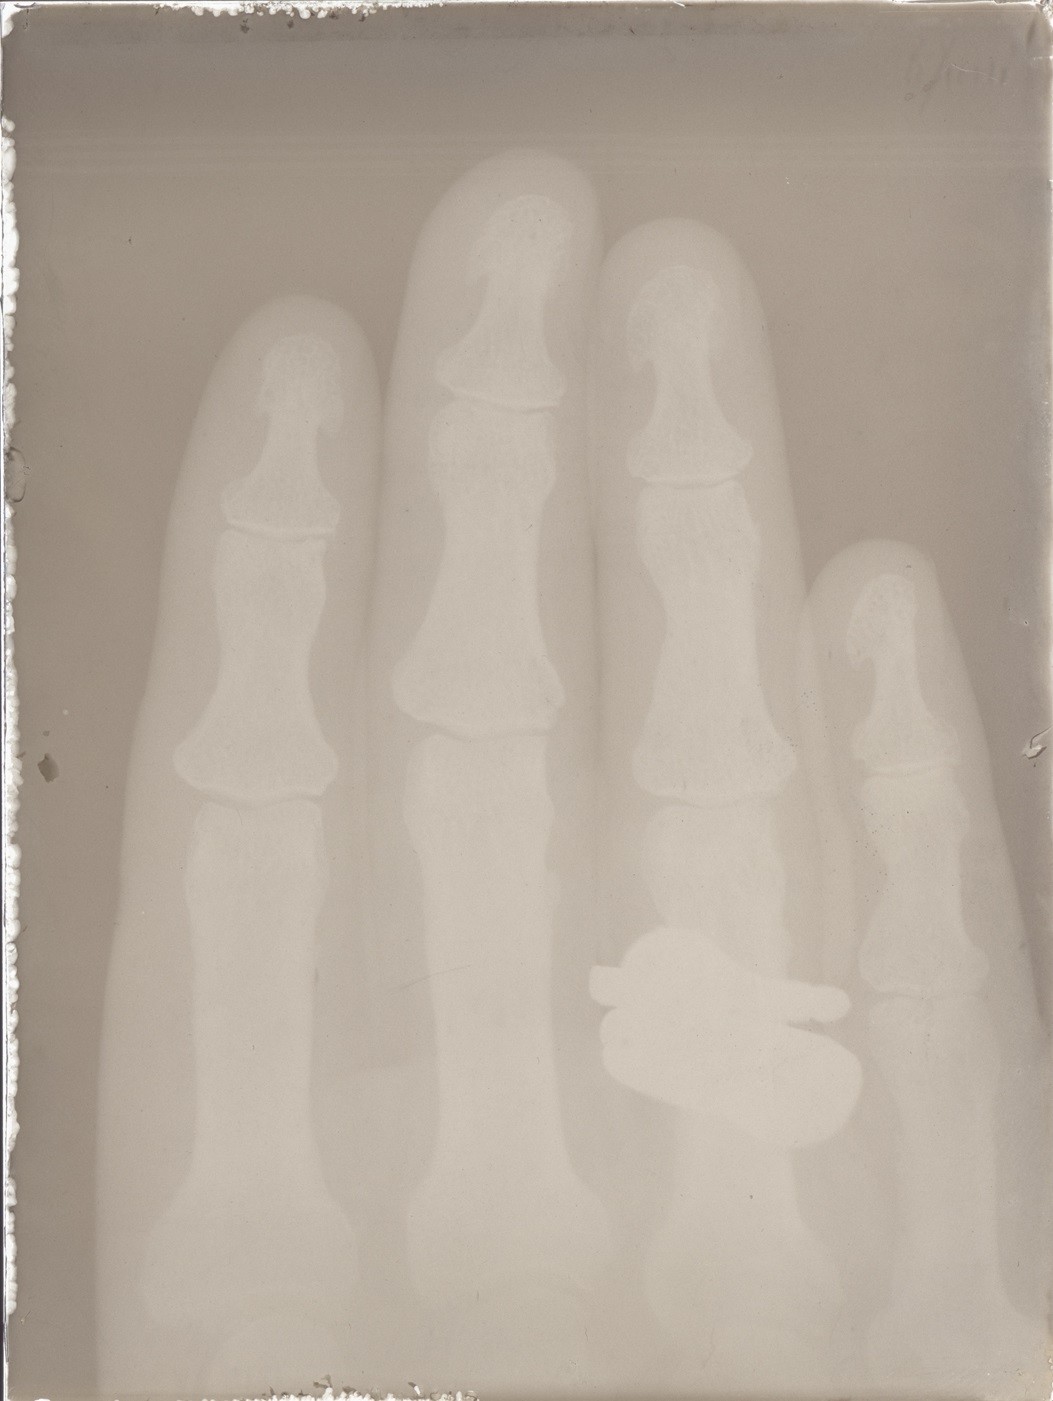 Versuch: Röntgenaufnahme einer Hand (06.06.1896), 86359 gp (Deutsches Röntgen-Museum CC BY-NC-SA)